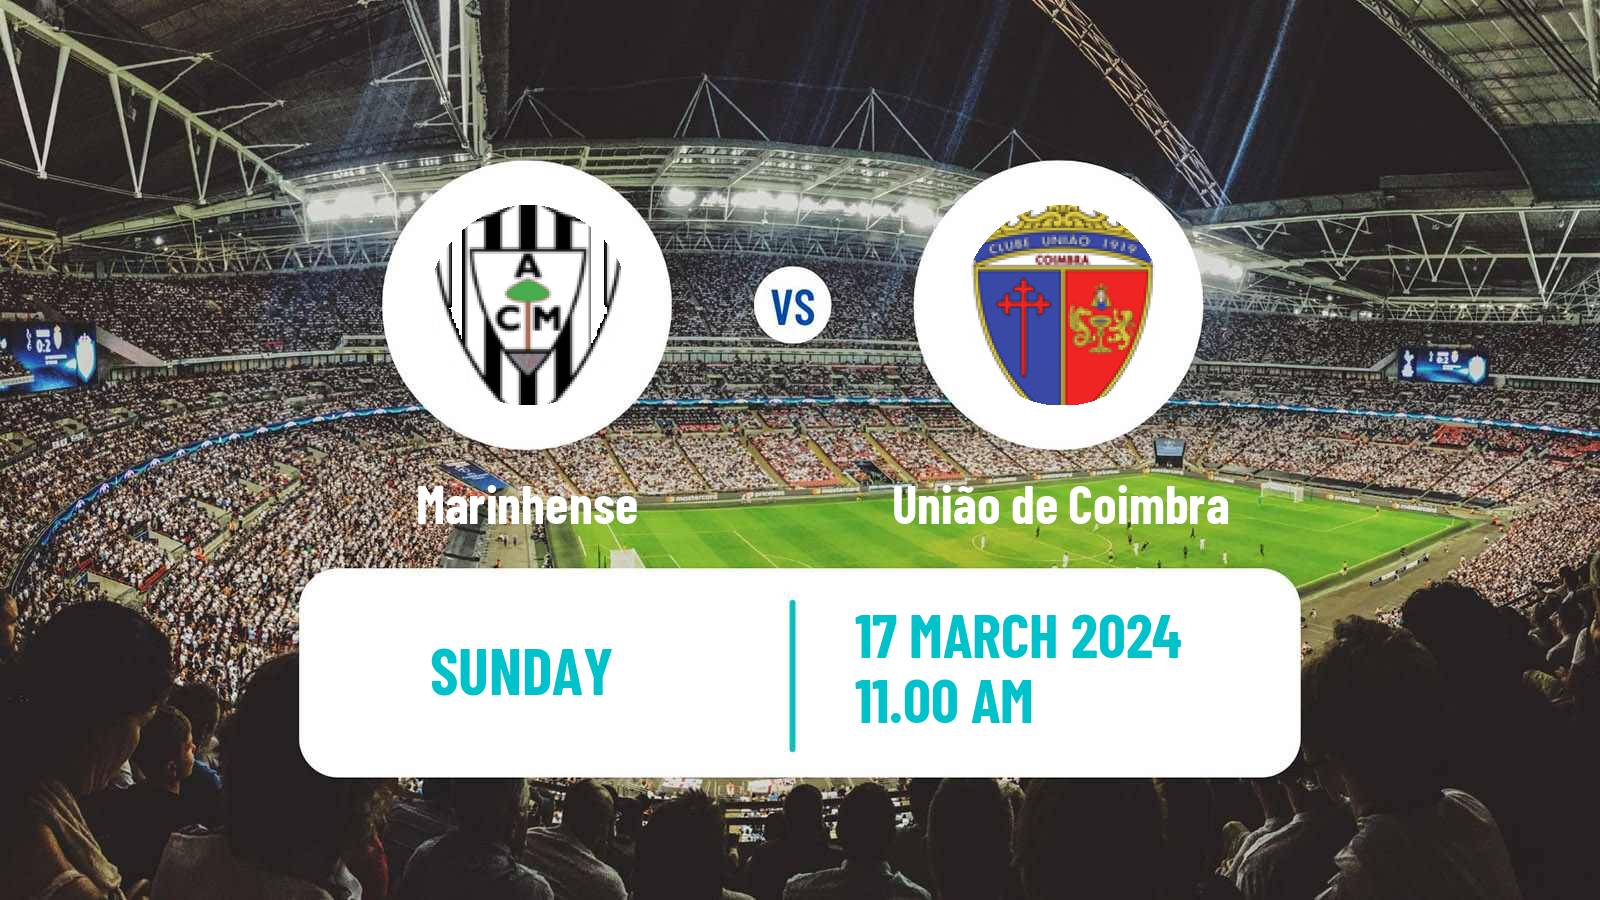 Soccer Campeonato de Portugal - Group C Marinhense - União de Coimbra